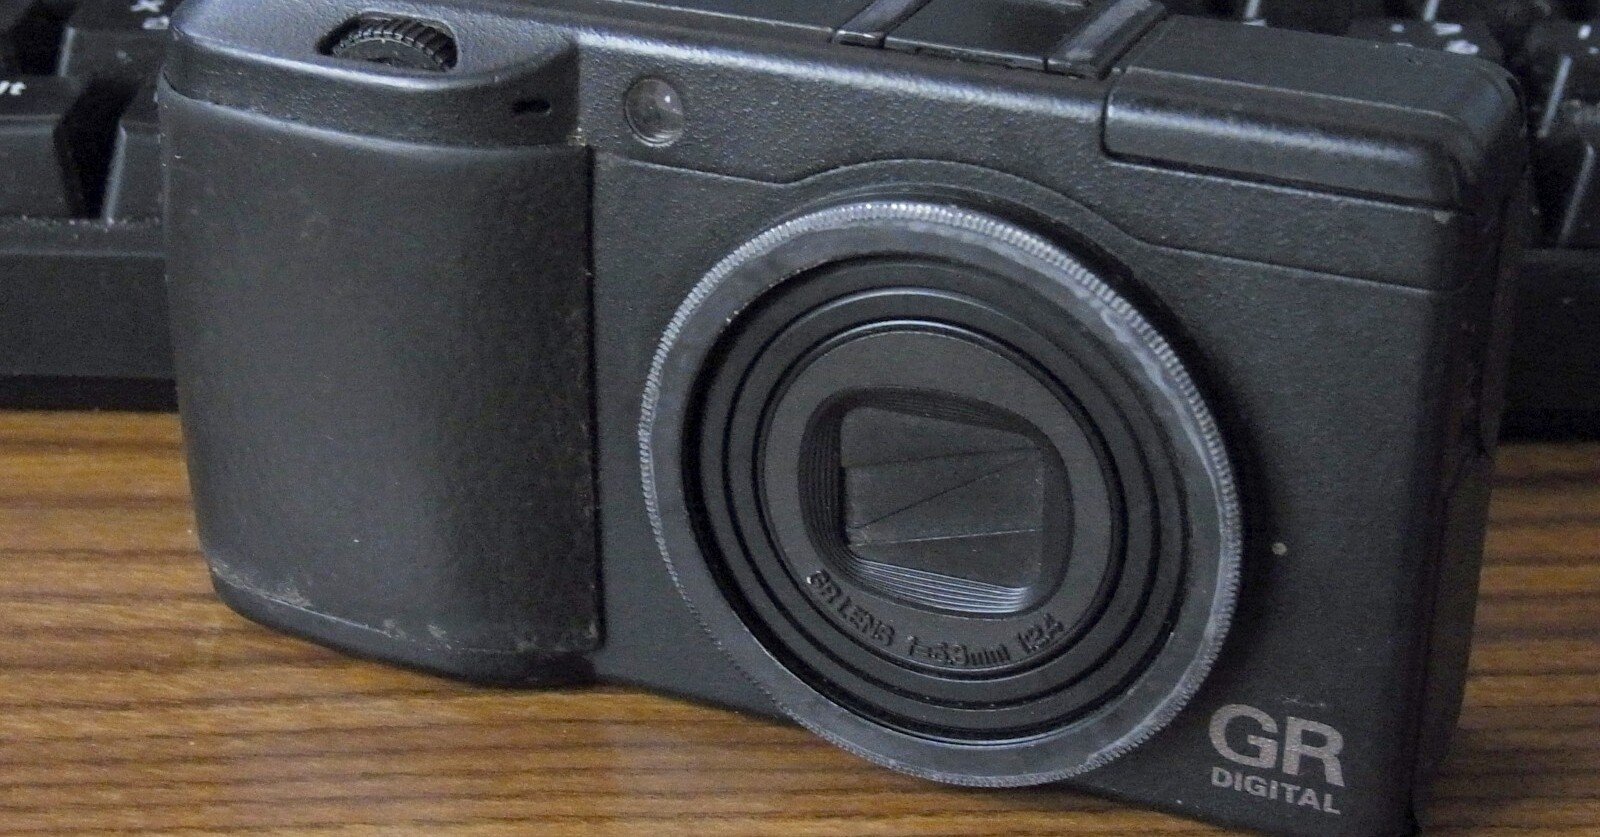 18416円 【93%OFF!】 Ricoh リコー GR Digital II デジタル カメラ